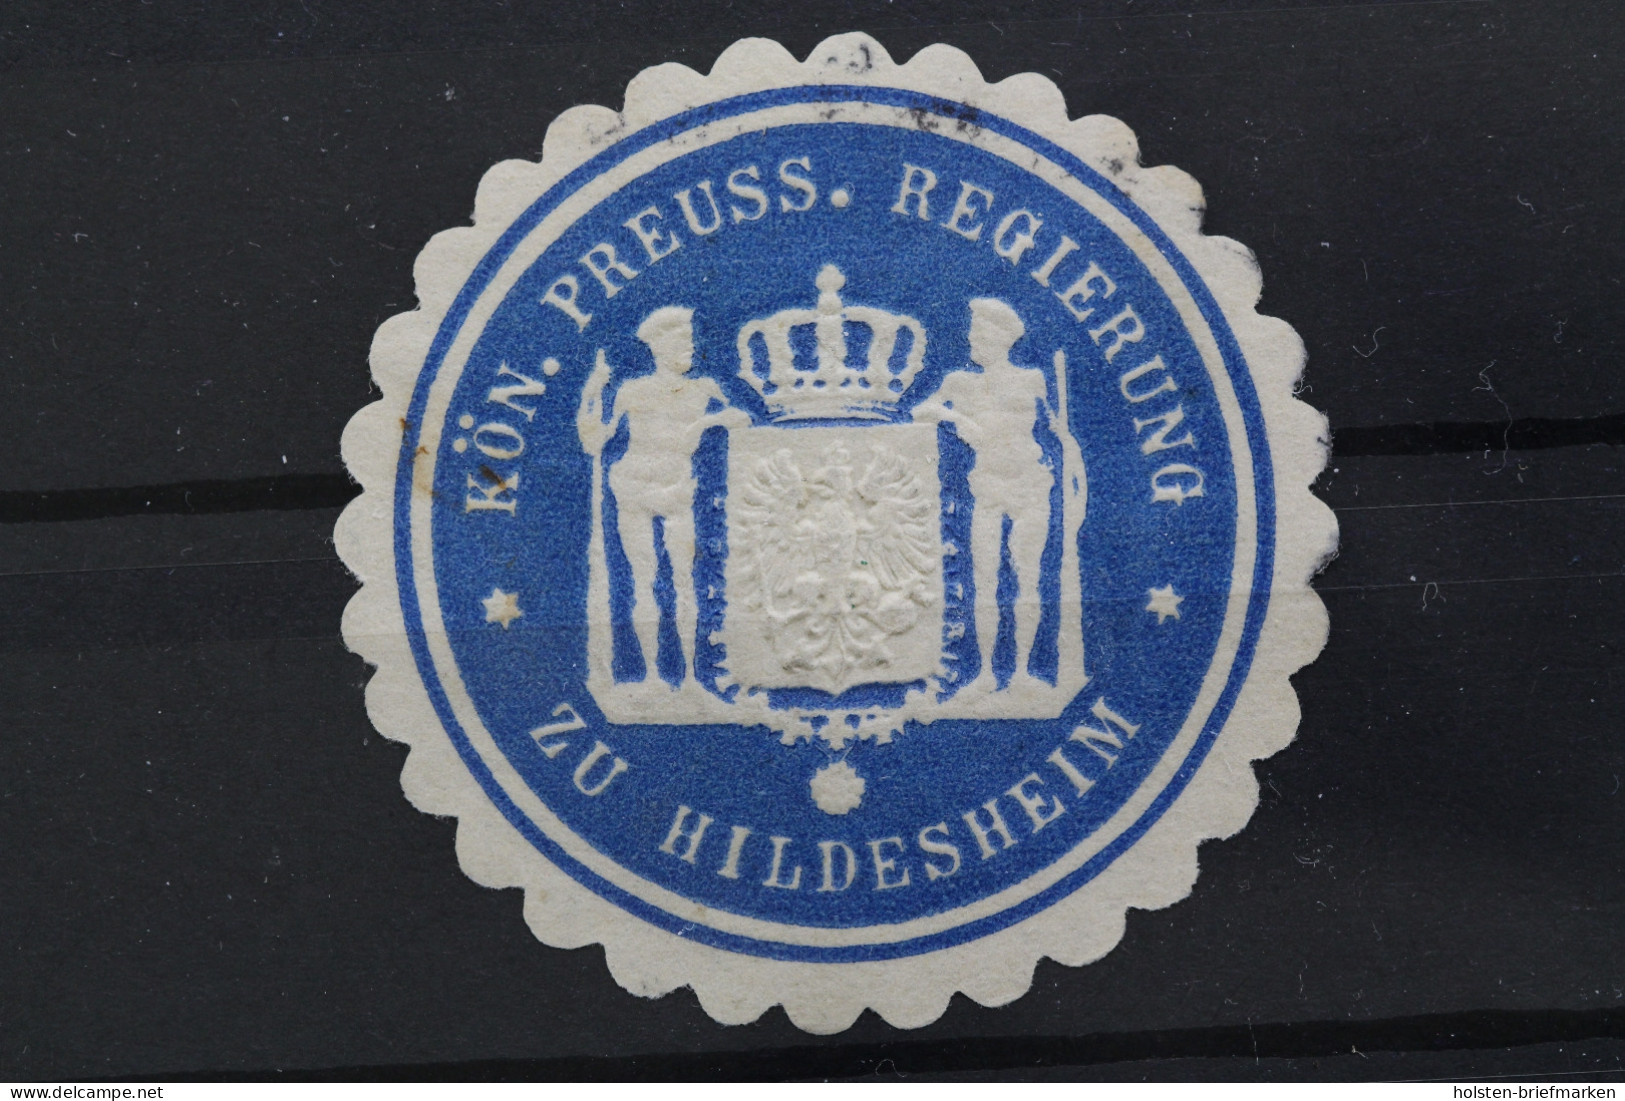 Hildesheim, König. Preuss. Regierung - Erinofilia